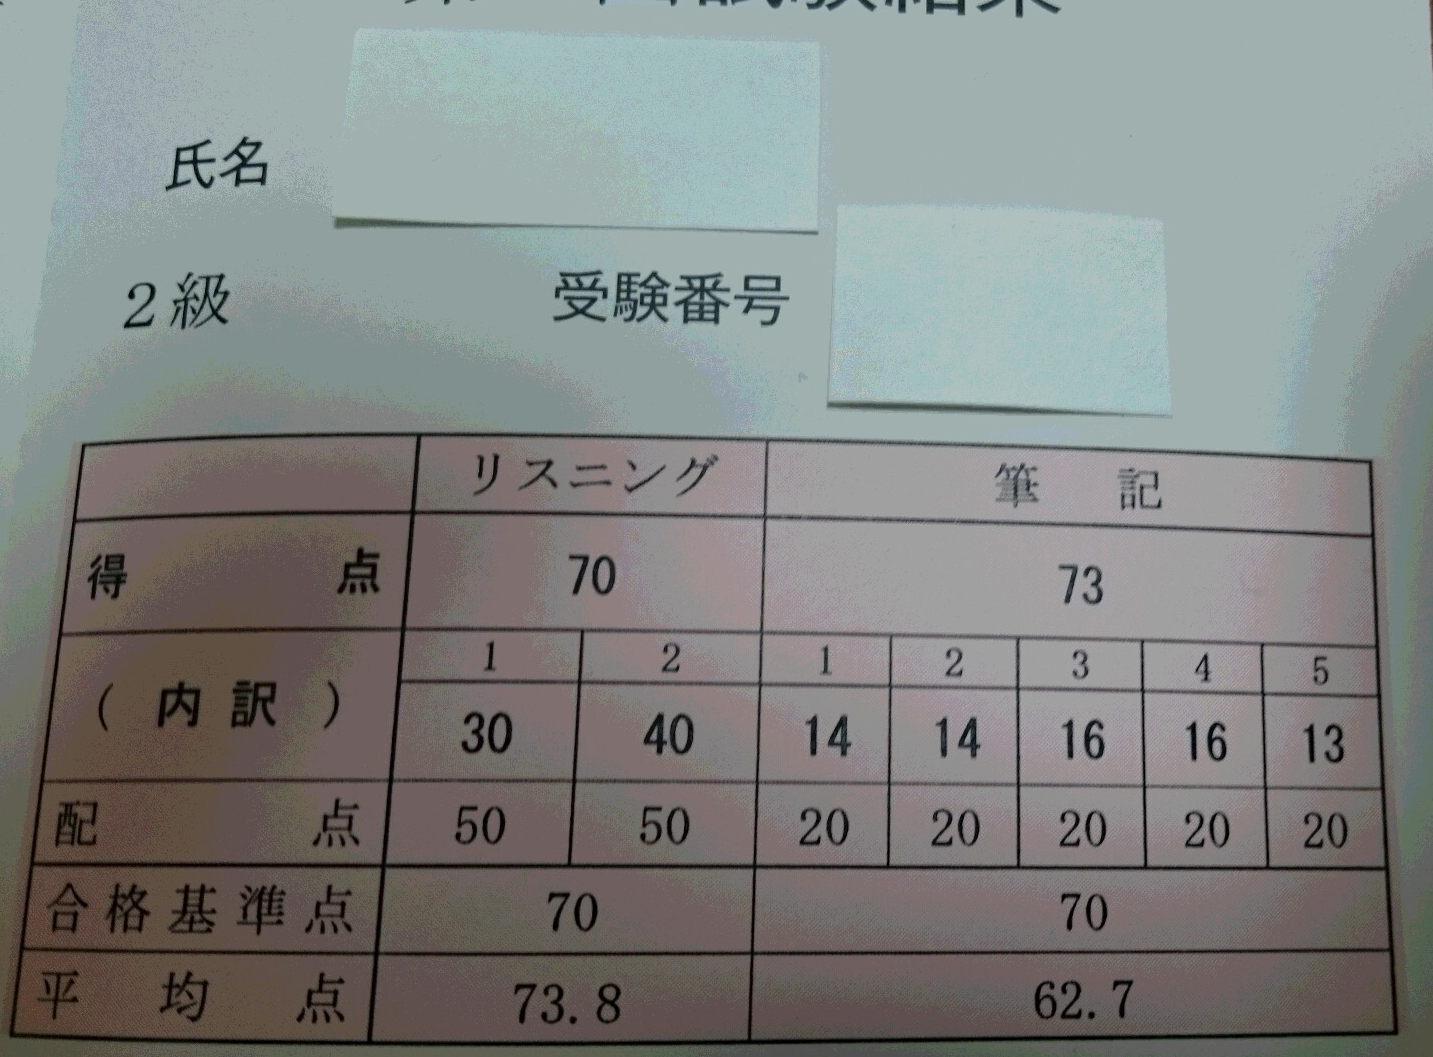 中国語検定二級合格 かかった時間と役立ったもの